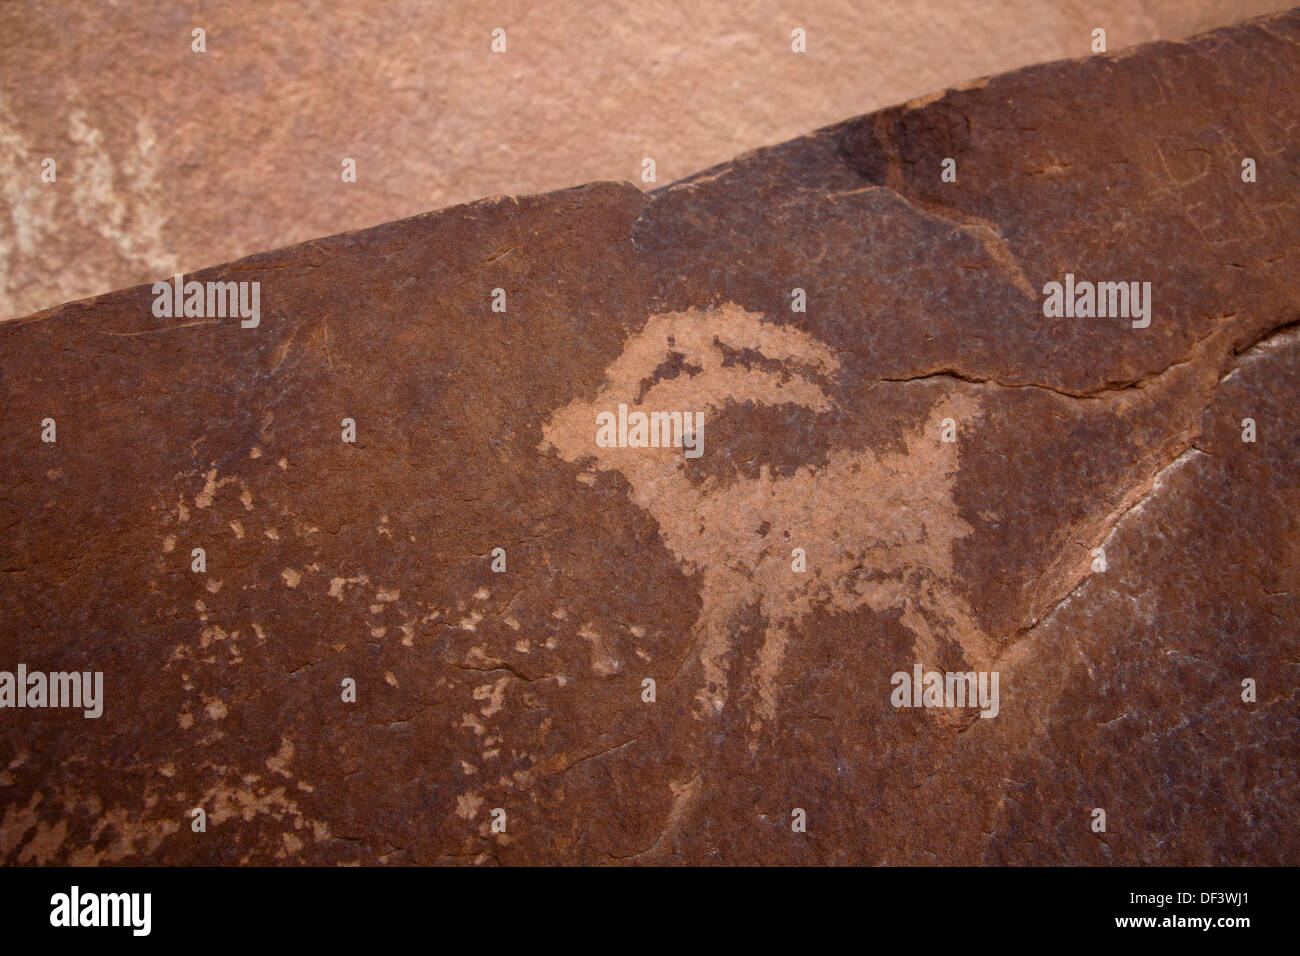 Petroglyph preistoriche nei pressi del fiume Colorado in Arches National Park vicino a Moab, Utah. Foto Stock